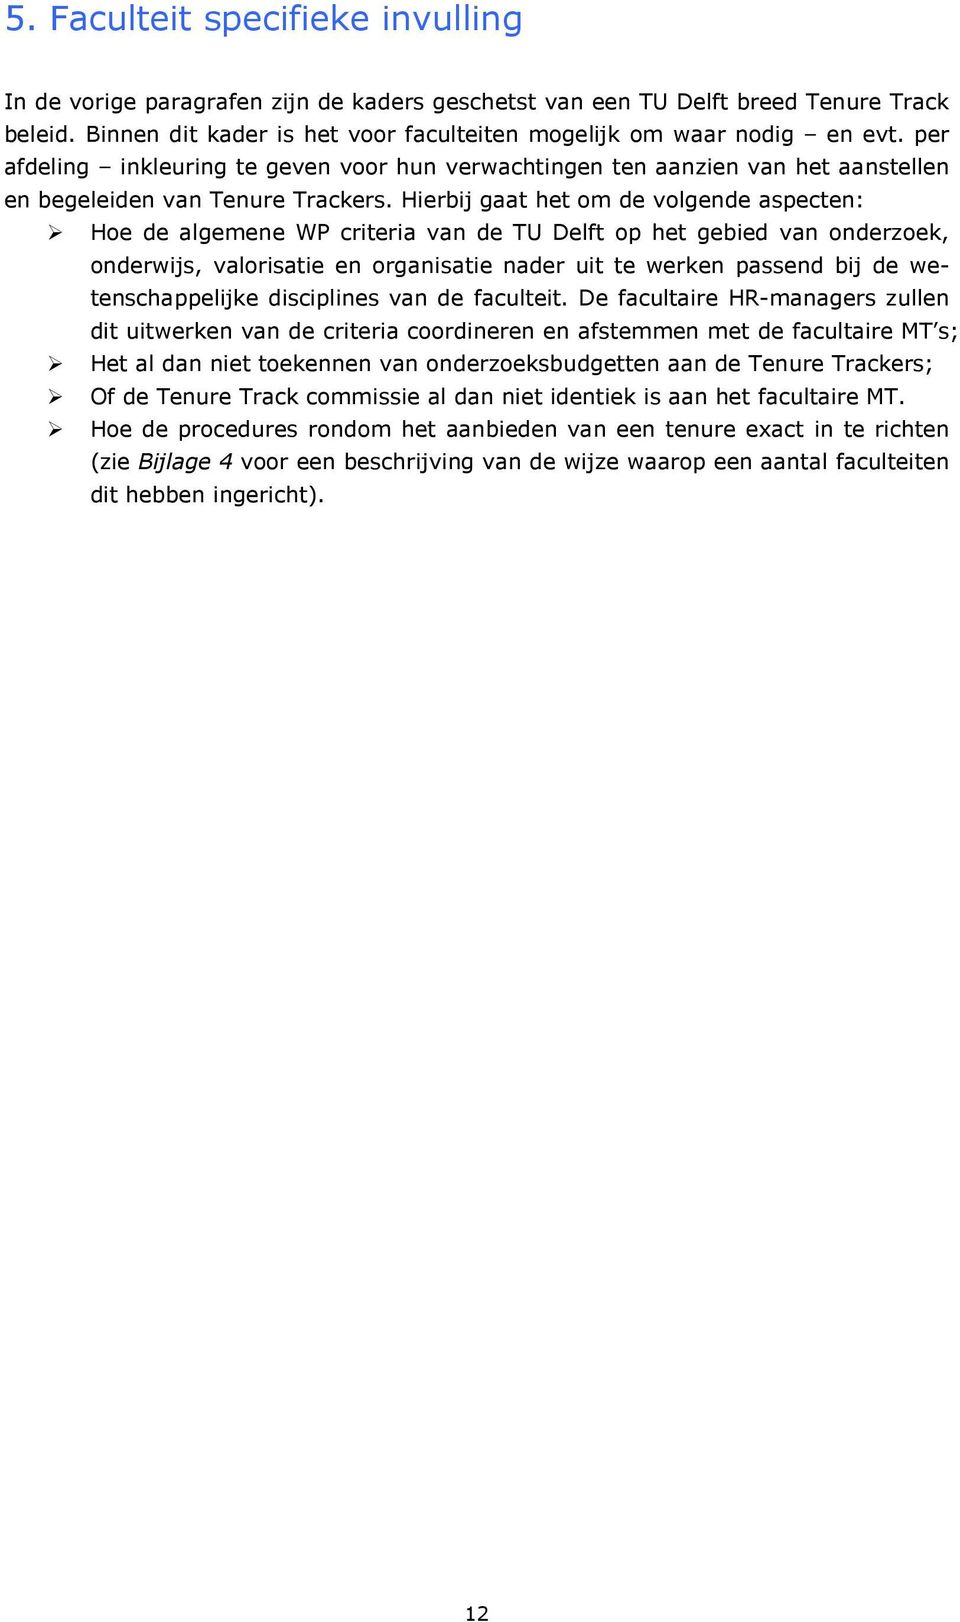 Hierbij gaat het om de volgende aspecten: Hoe de algemene WP criteria van de TU Delft op het gebied van onderzoek, onderwijs, valorisatie en organisatie nader uit te werken passend bij de